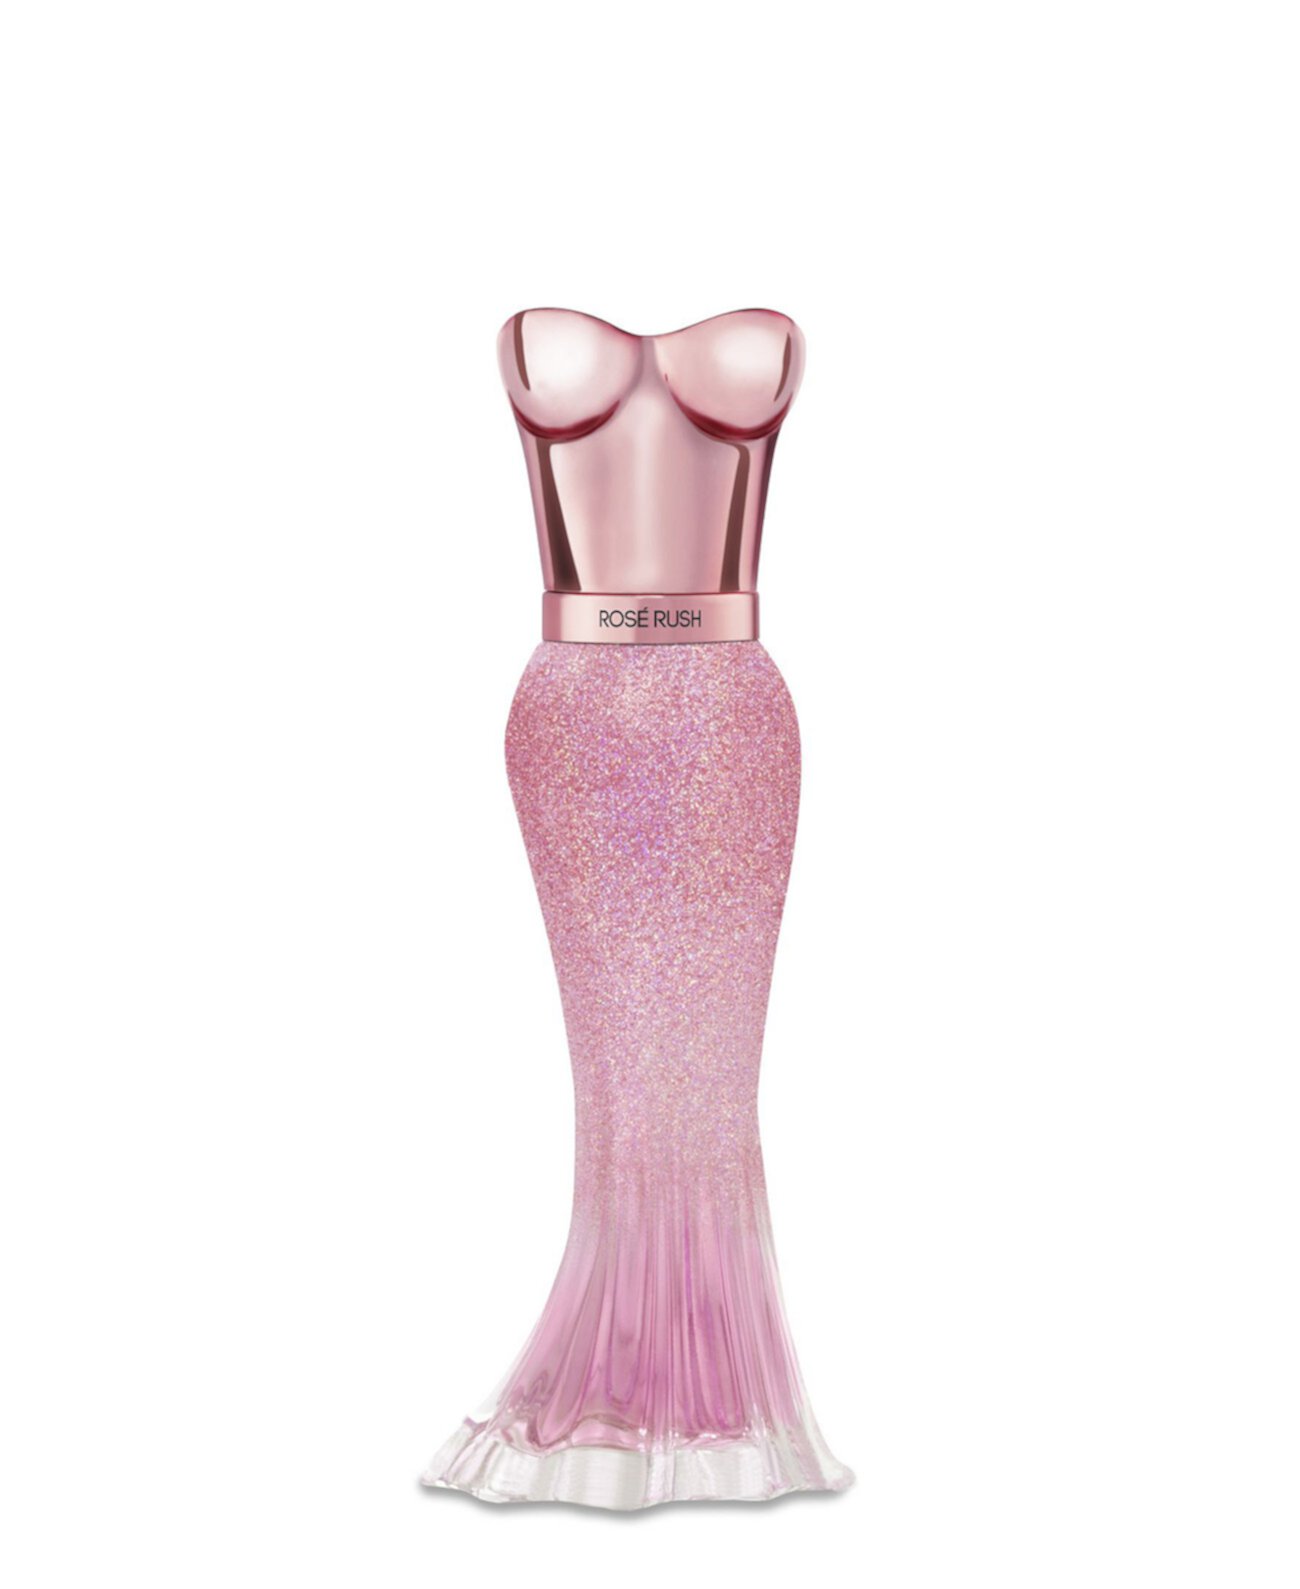 Женская Rose Rush Eau De Parfum, 1 эт. Унция Paris Hilton